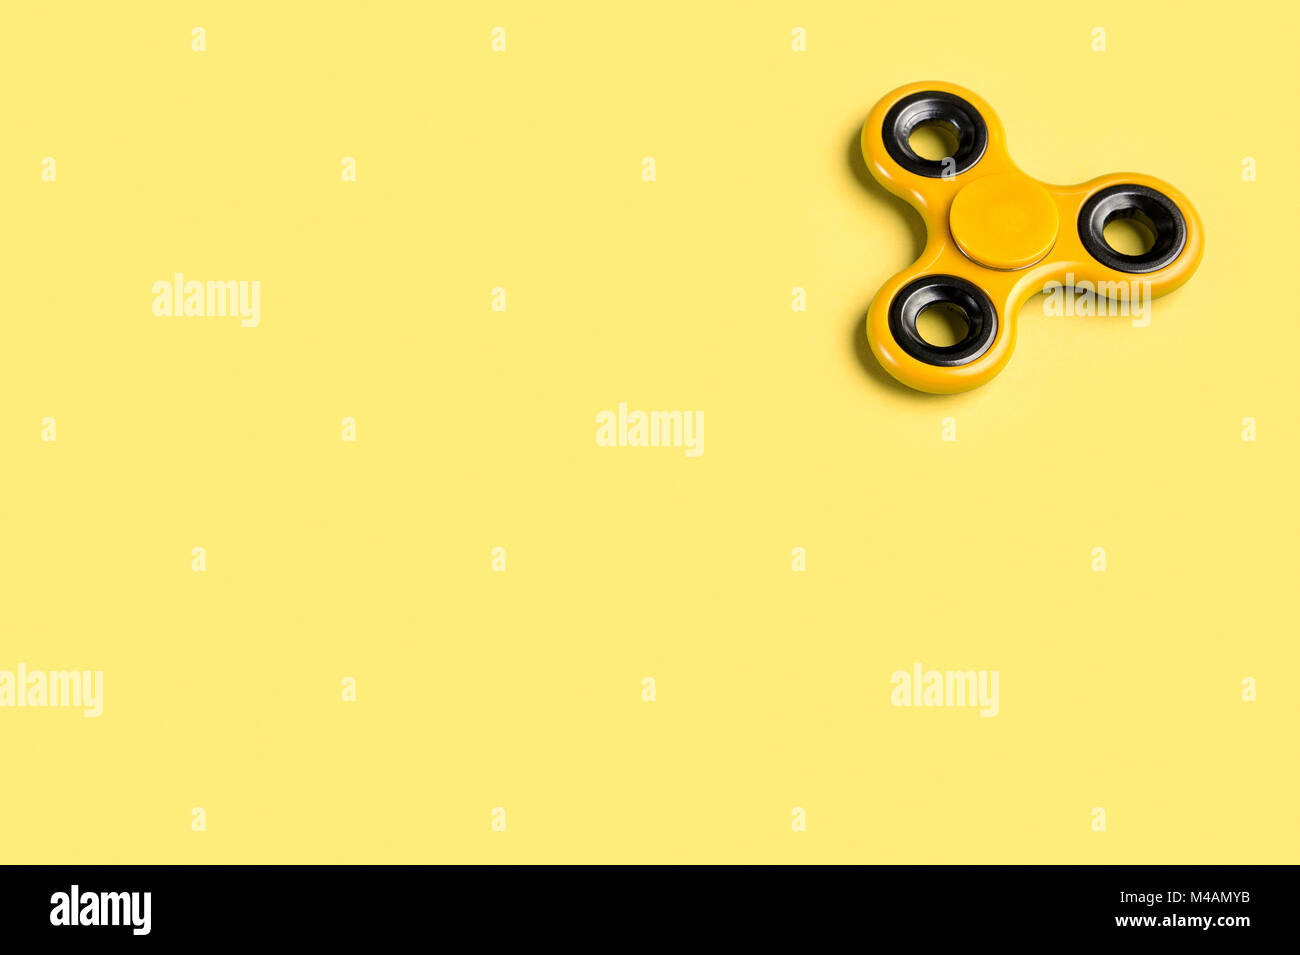 Gelbe zappeln Spinner Hintergrund Vorlage mit kopieren. Beliebte Kinder Stress und Angst relief Spielzeug in der rechten oberen Ecke. Stockfoto